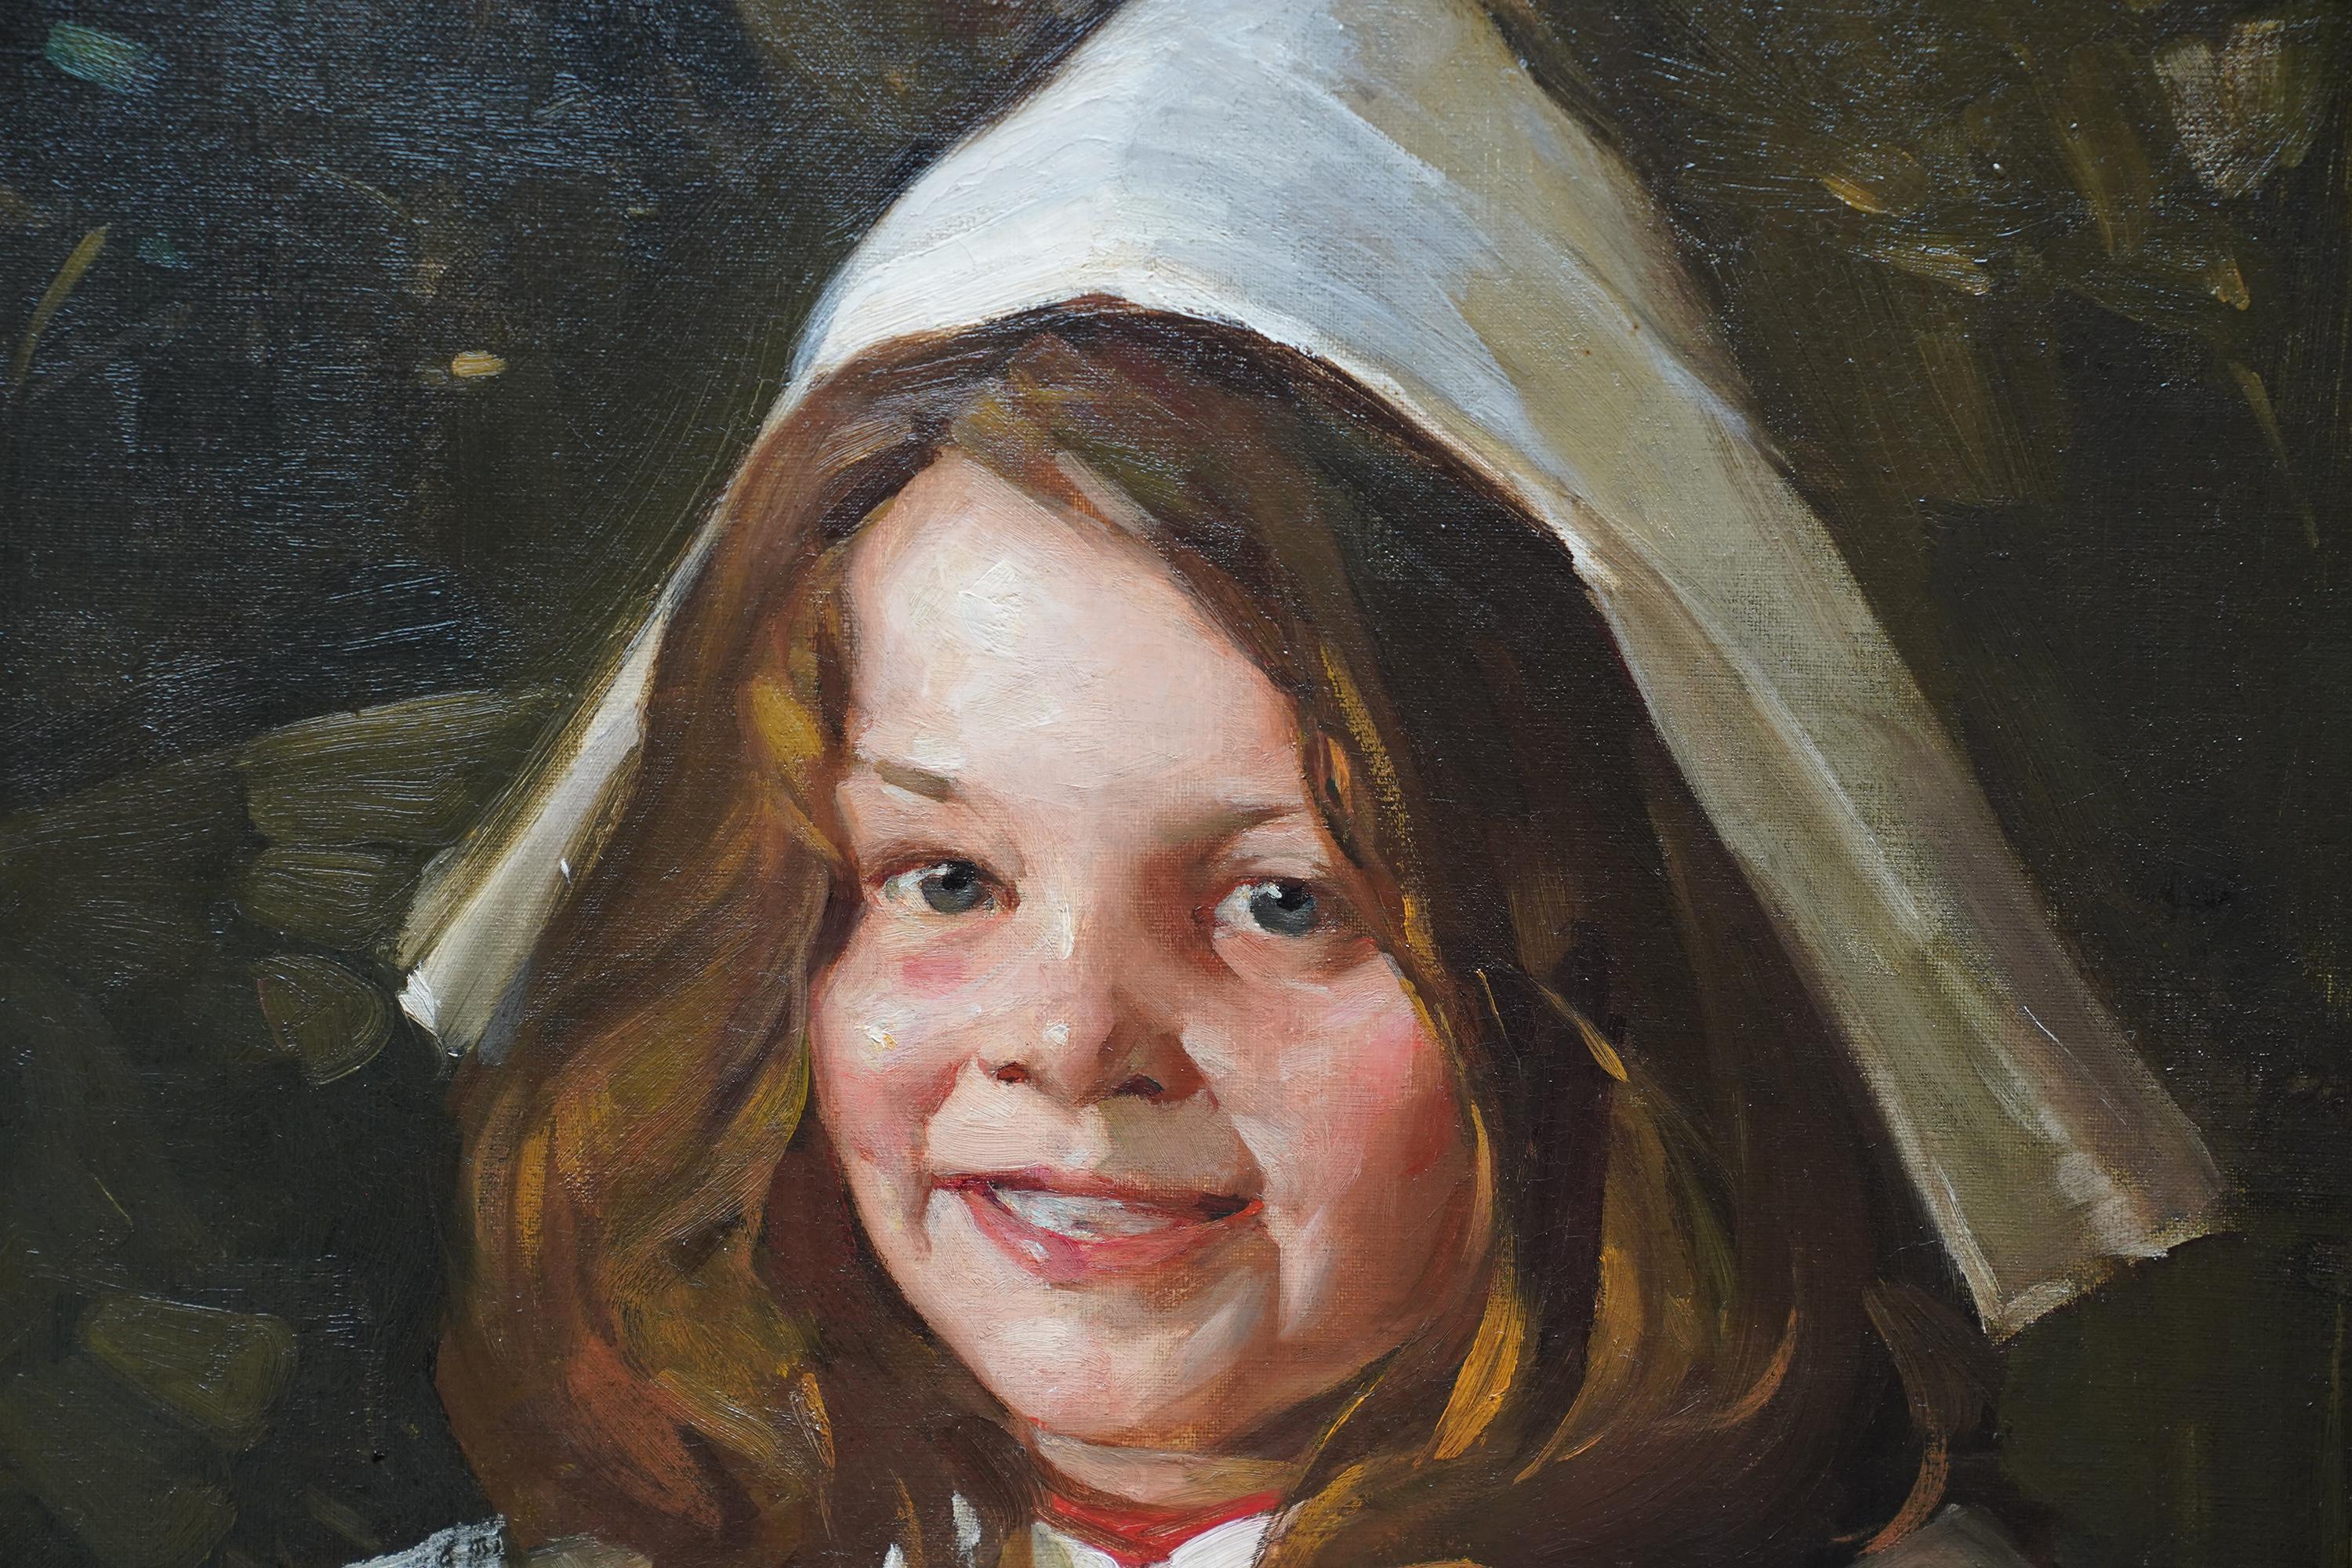 Dieses heitere schottische Porträt-Ölgemälde stammt von dem bekannten Künstler David Alison. Es wurde 1906 gemalt und zeigt das Porträt eines lächelnden Mädchens in einem roten Kleid mit weißem Kragen und weißem Partyhut vor einem dunkel gemusterten